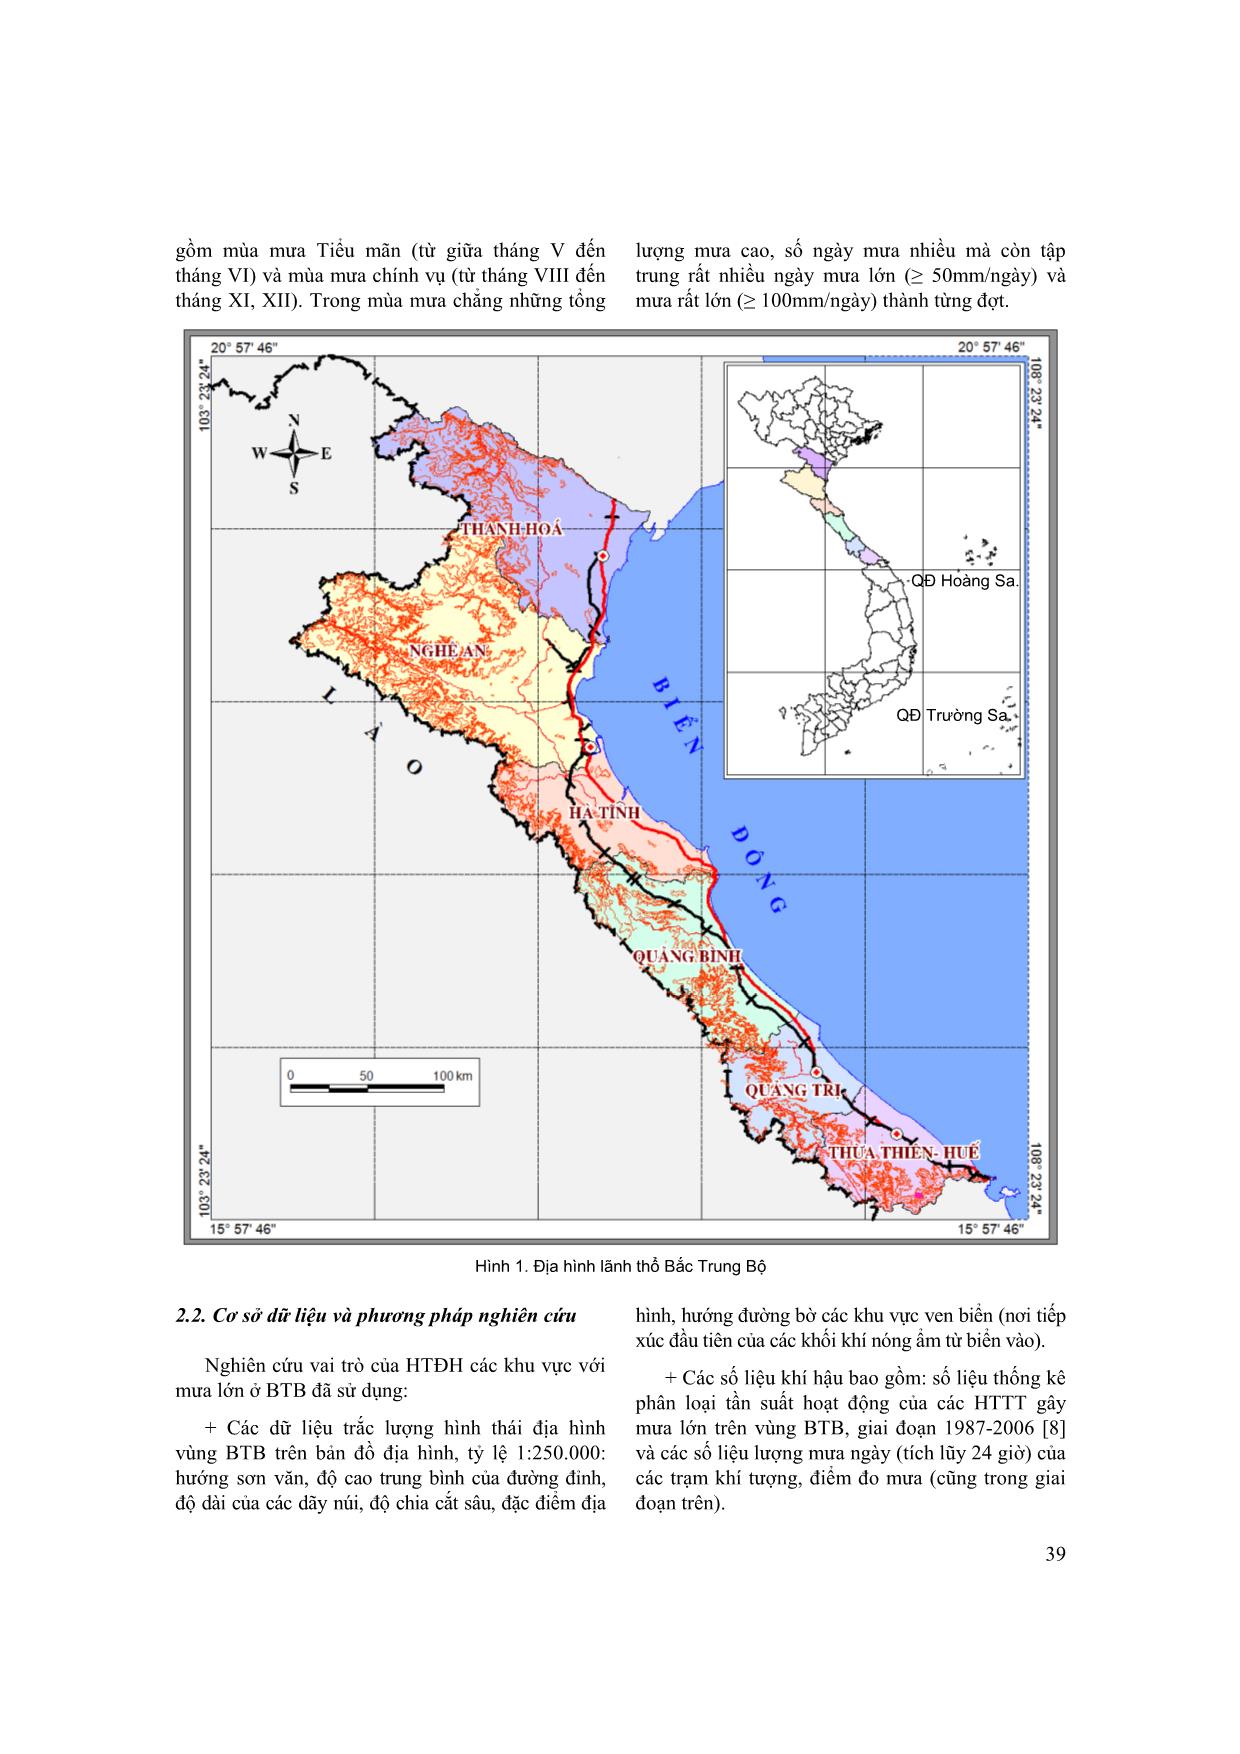 Vai trò của hình thái địa hình đối với mưa lớn ở vùng Bắc Trung Bộ và sự phân hóa giữa Bắc và Nam Đèo Ngang trang 2